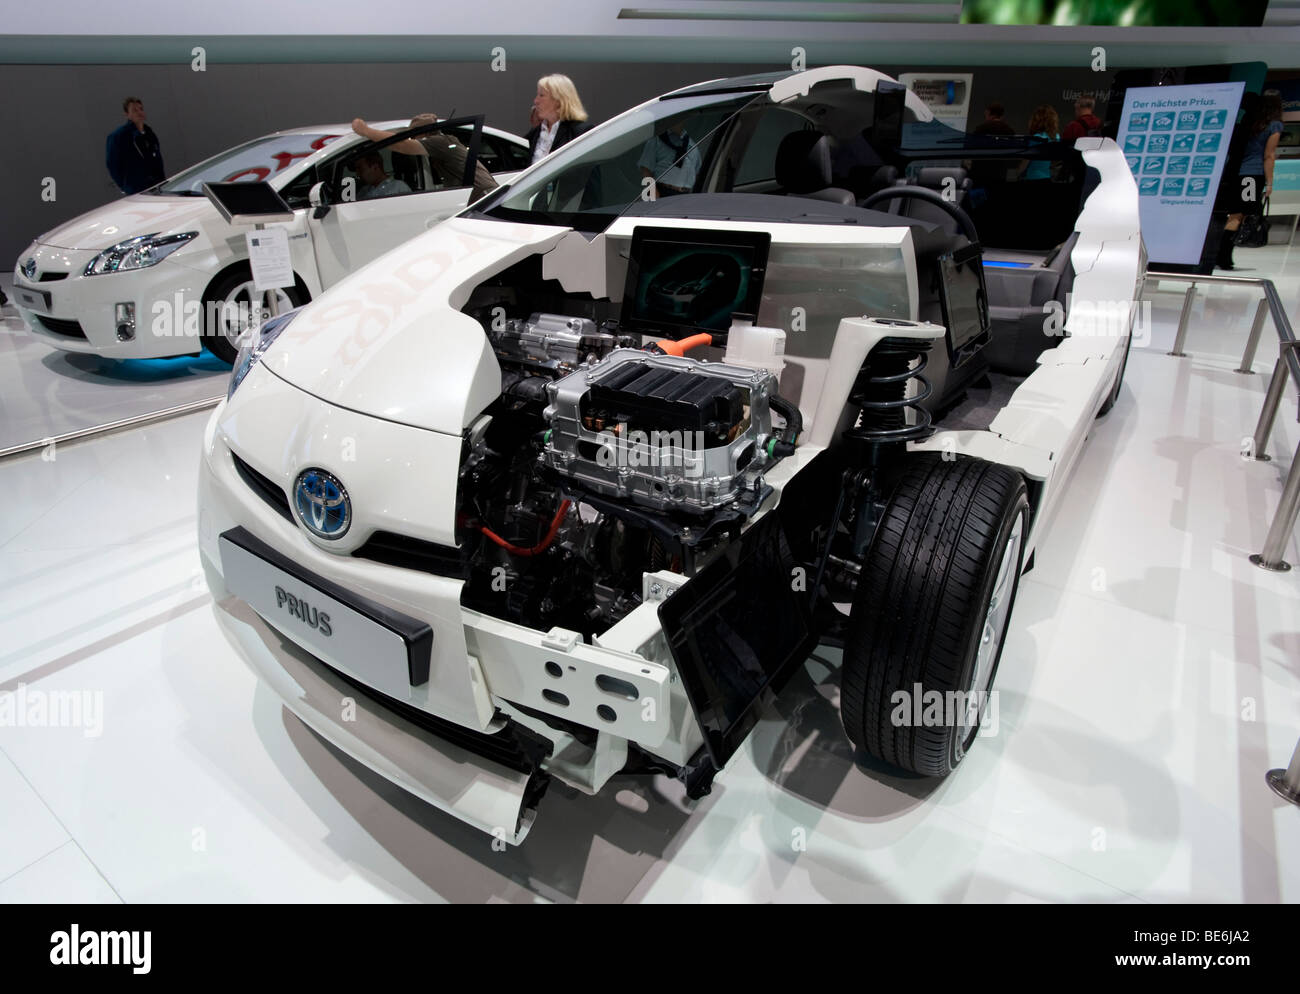 Tagliare il modello della nuova Toyota Prius ibrida berlina al Salone di Francoforte 2009 Foto Stock